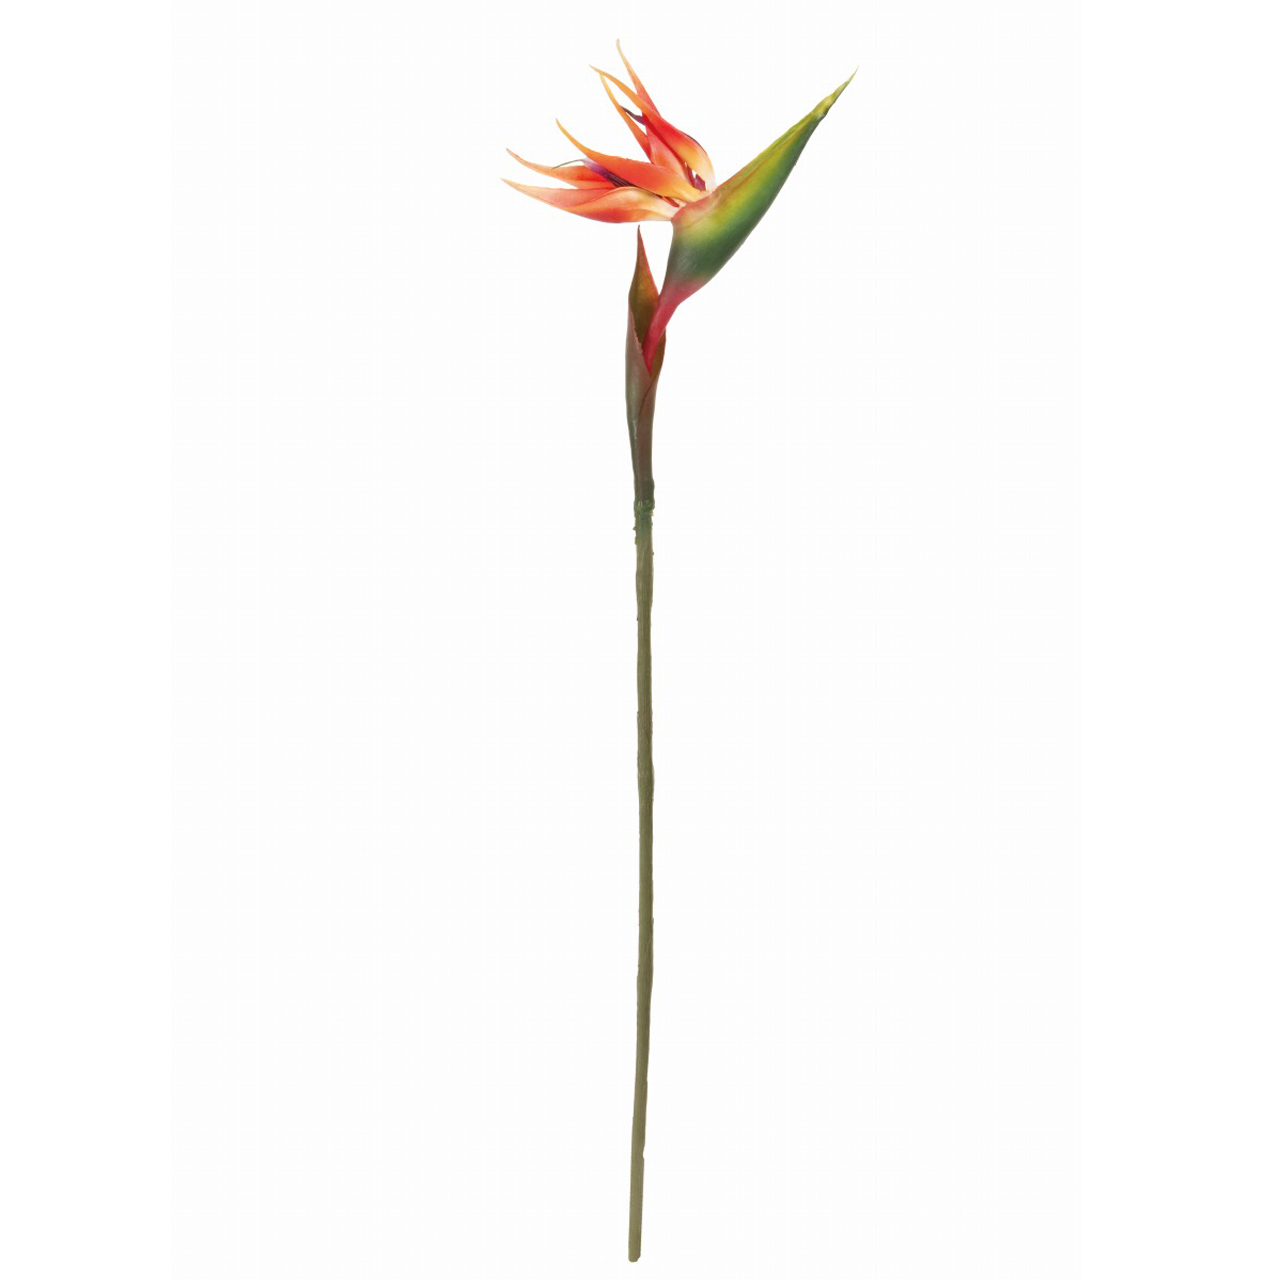 マイフラ 通販 Magiq ジェリーストレチア オレンジ アーティフィシャルフラワー 造花 Fm トロピカルフラワー 花の全長 約18 全長 約80cm オレンジ Magiq アーティフィシャルフラワー 造花 全国にmagiq 花器 花資材などをお届けします